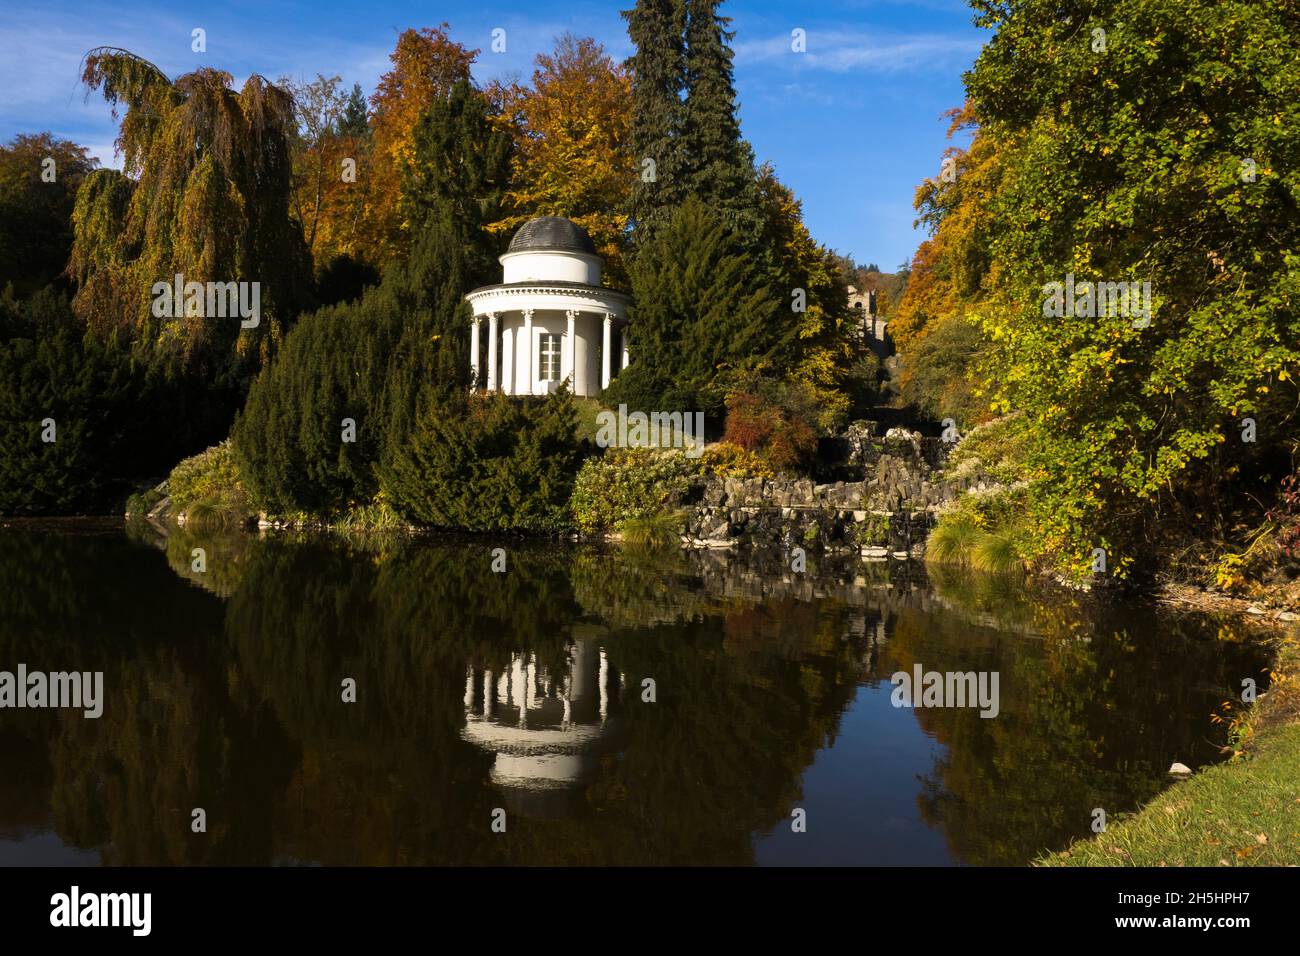 Jussow-Tempel mit Brunnenteich im Herbst, Kassel, Bergpark Wilhelmshöhe, UNESCO-Weltkulturerbe, Hessen, Deutschland Stockfoto